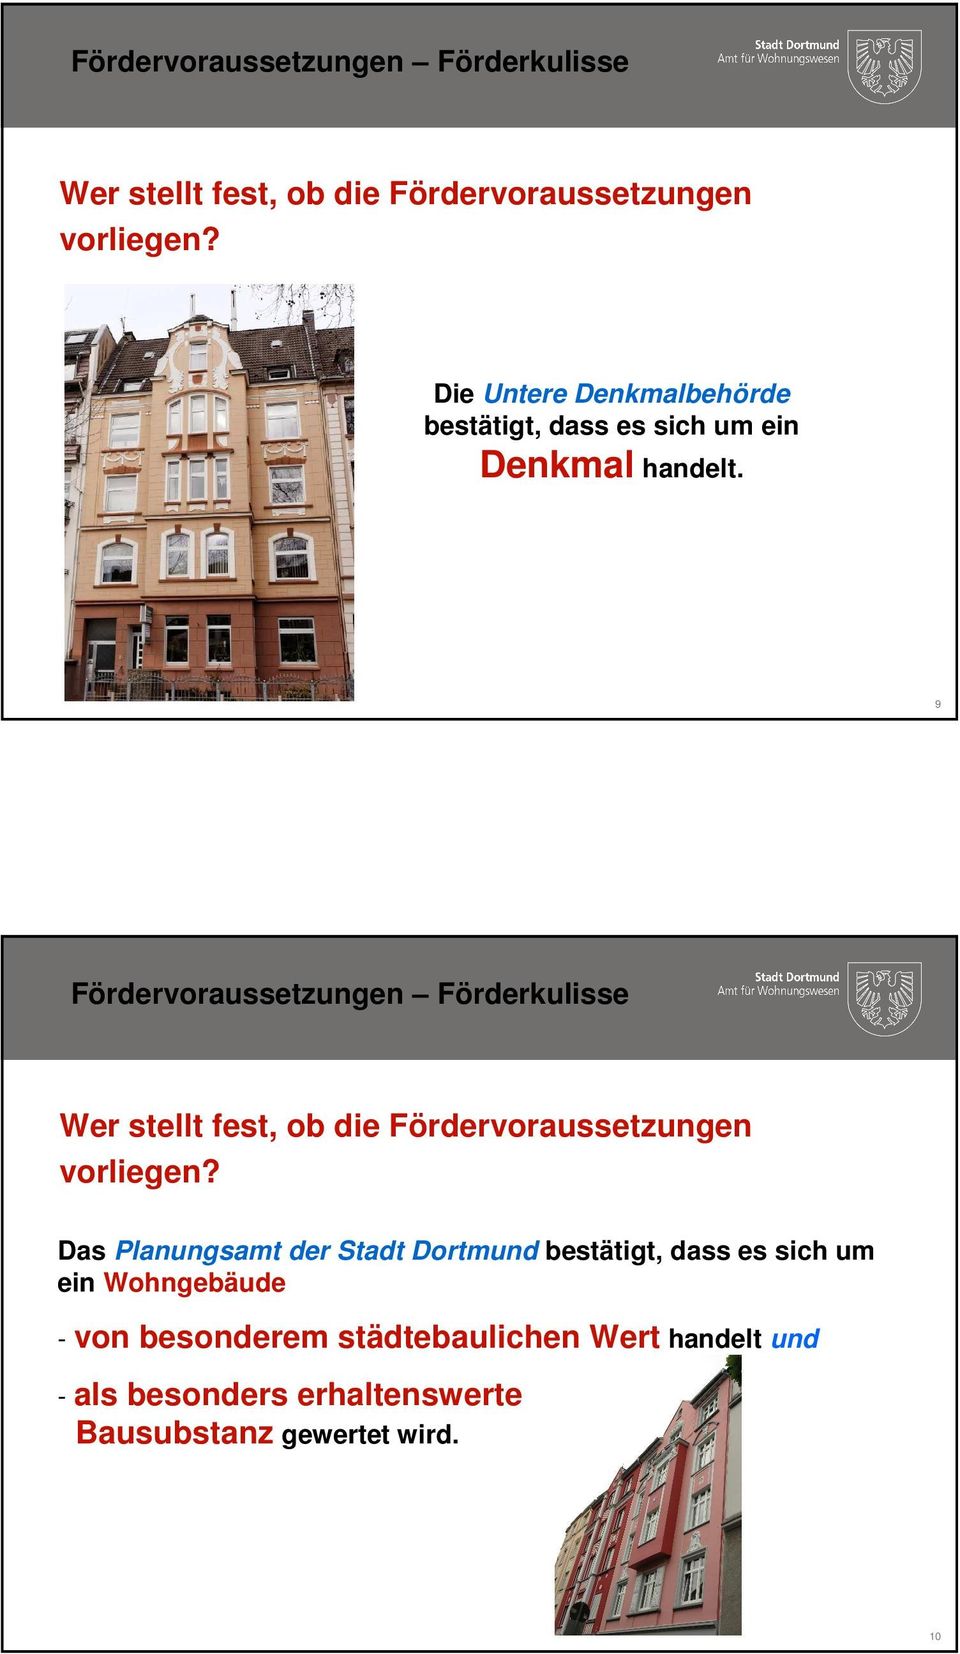 9  Das Planungsamt der Stadt Dortmund bestätigt, dass es sich um ein Wohngebäude - von besonderem